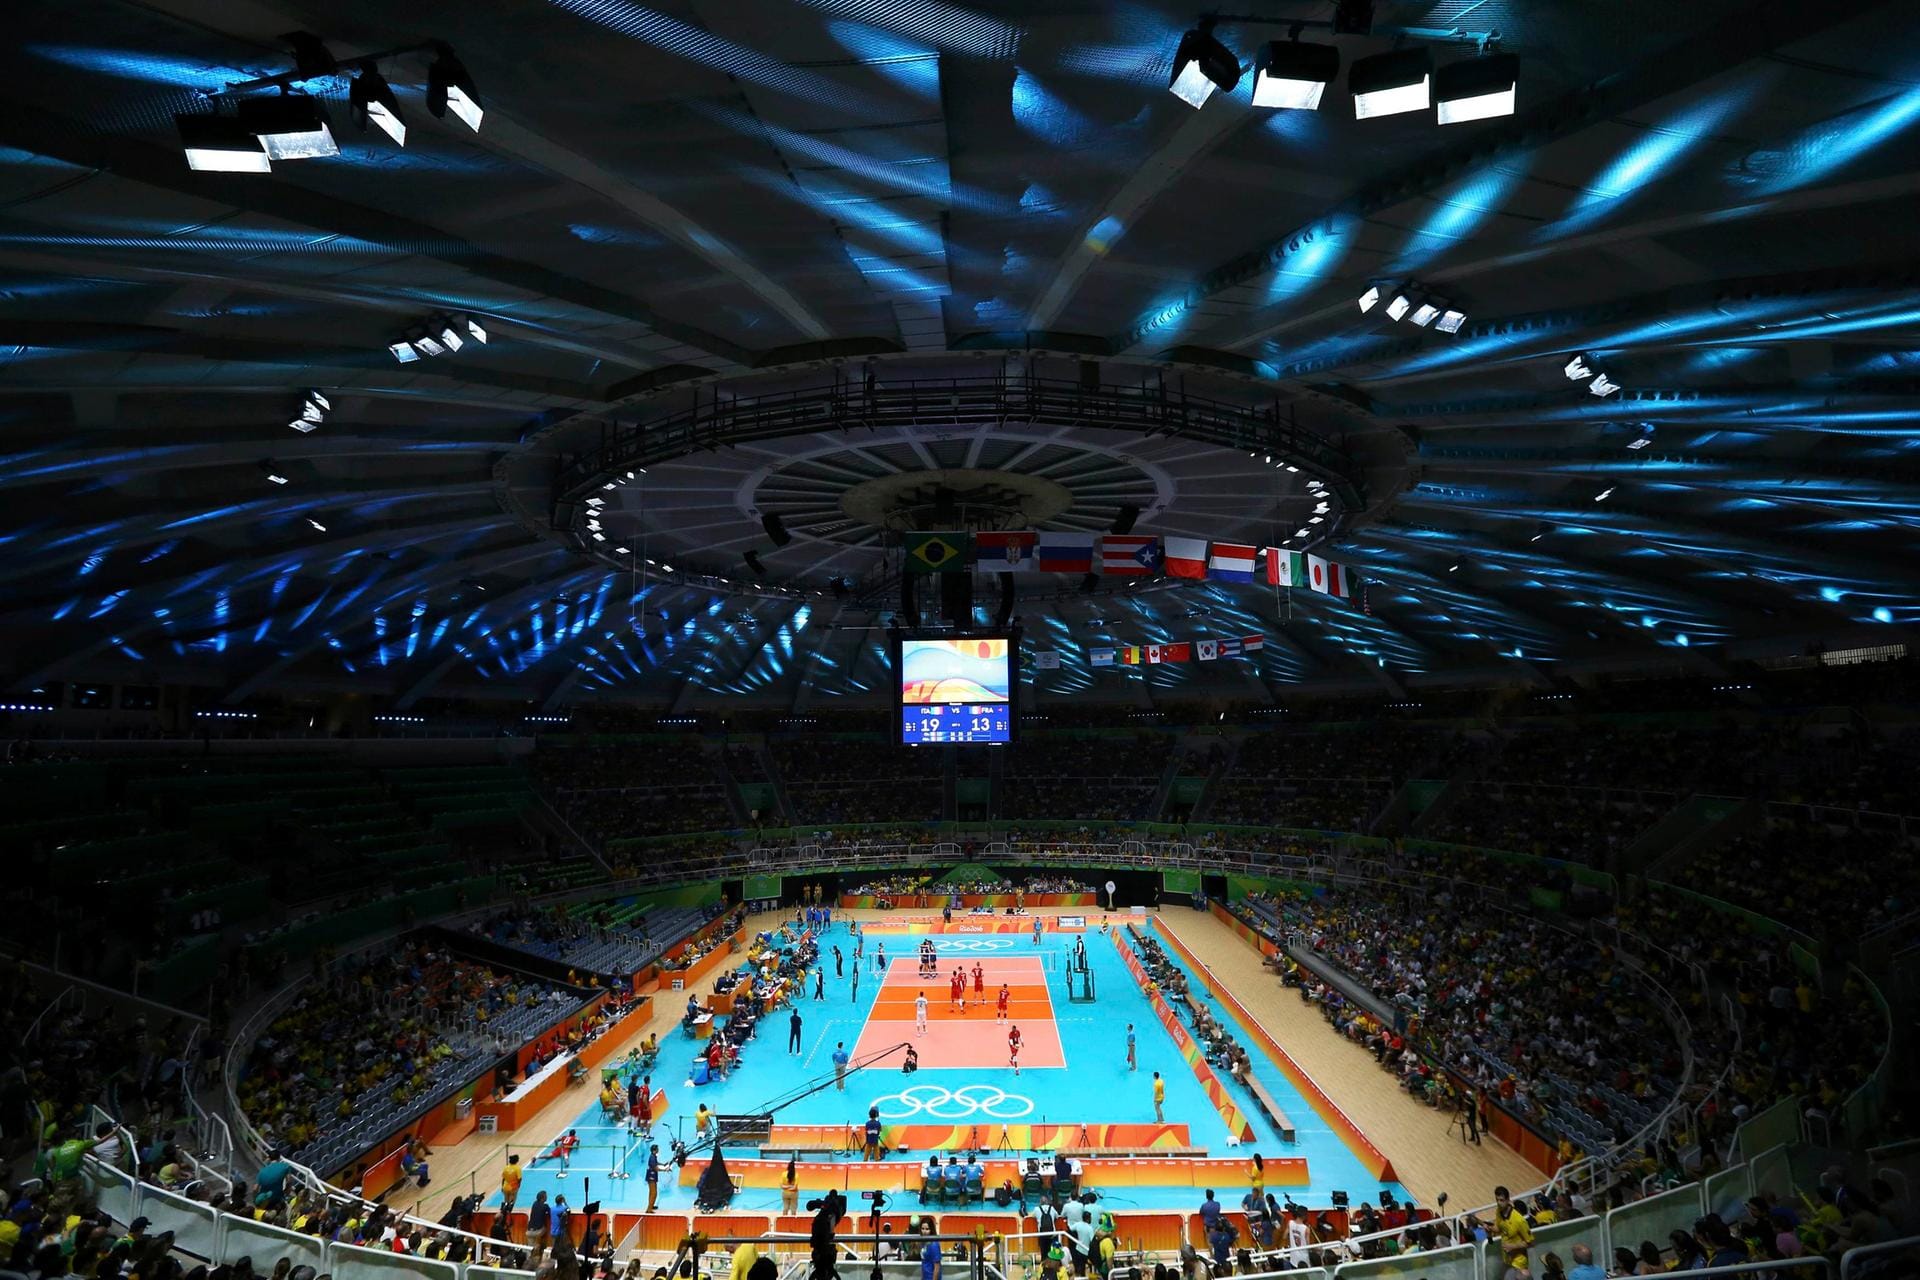 Frankreich trifft im Volleyball auf Italien - im "Maracanazinho" von Rio hat man spektakuläre Sicht.